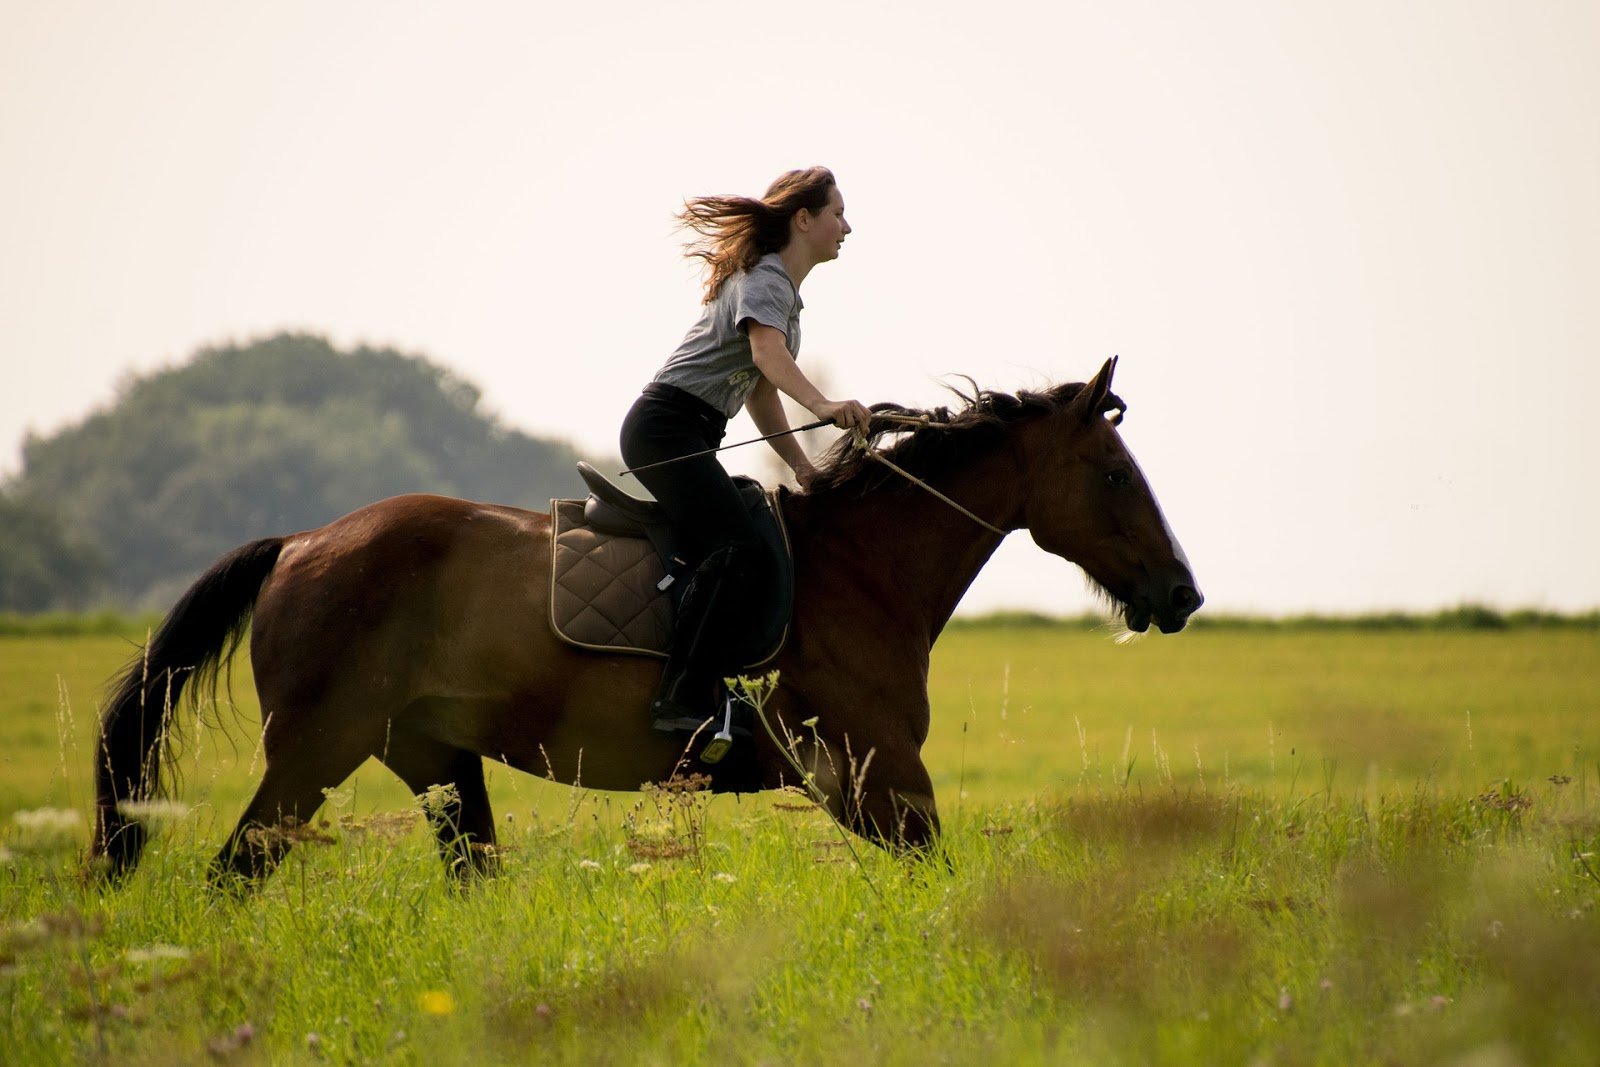 Над верхом. Девушка верхом на лошади. Девушка на коне верхом. Верхом в поле. Верхом на лошади галопом.